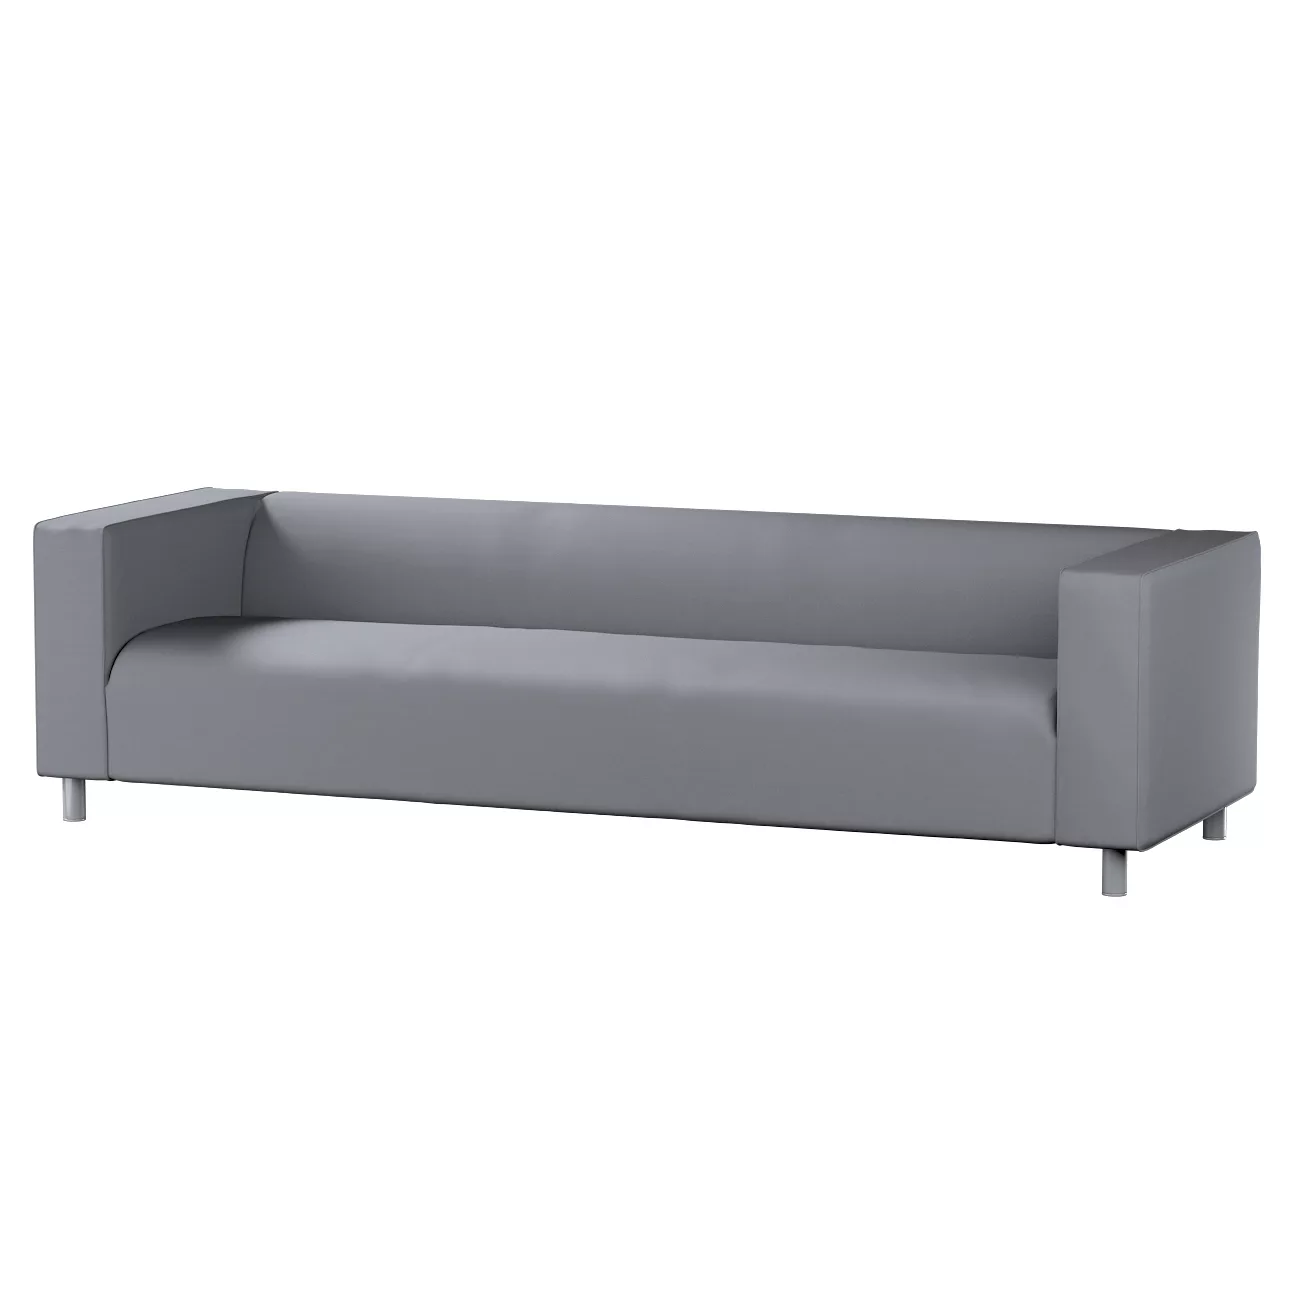 Bezug für Klippan 4-Sitzer Sofa, grau, Bezug für Klippan 4-Sitzer, Cotton P günstig online kaufen